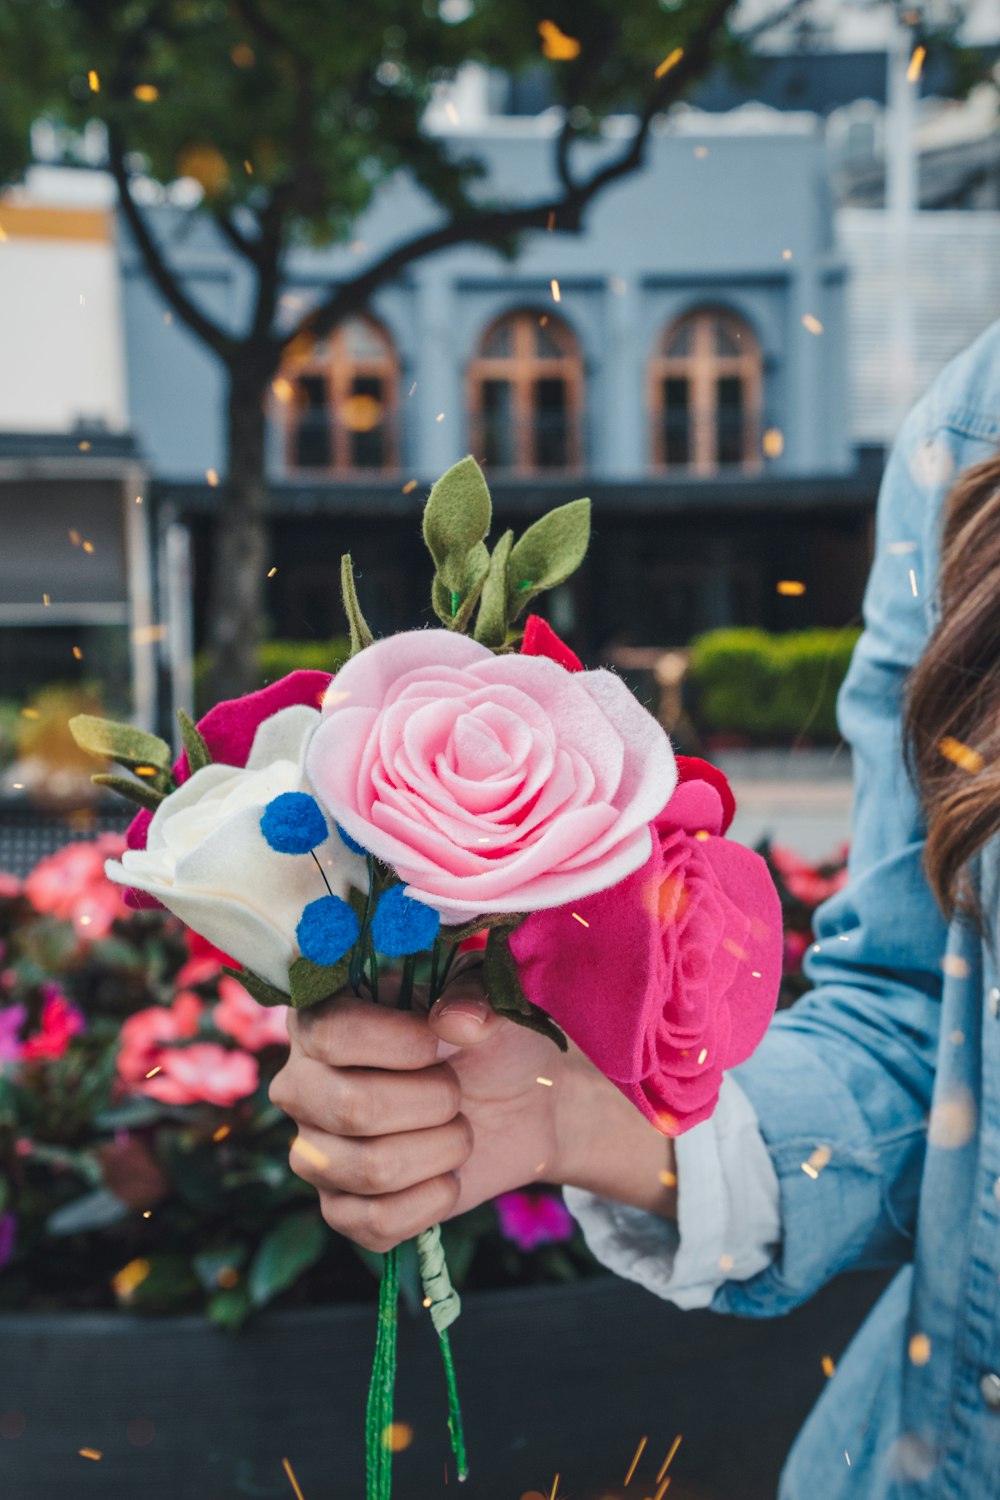 donna che tiene il fiore finto dai petali rosa e bianchi